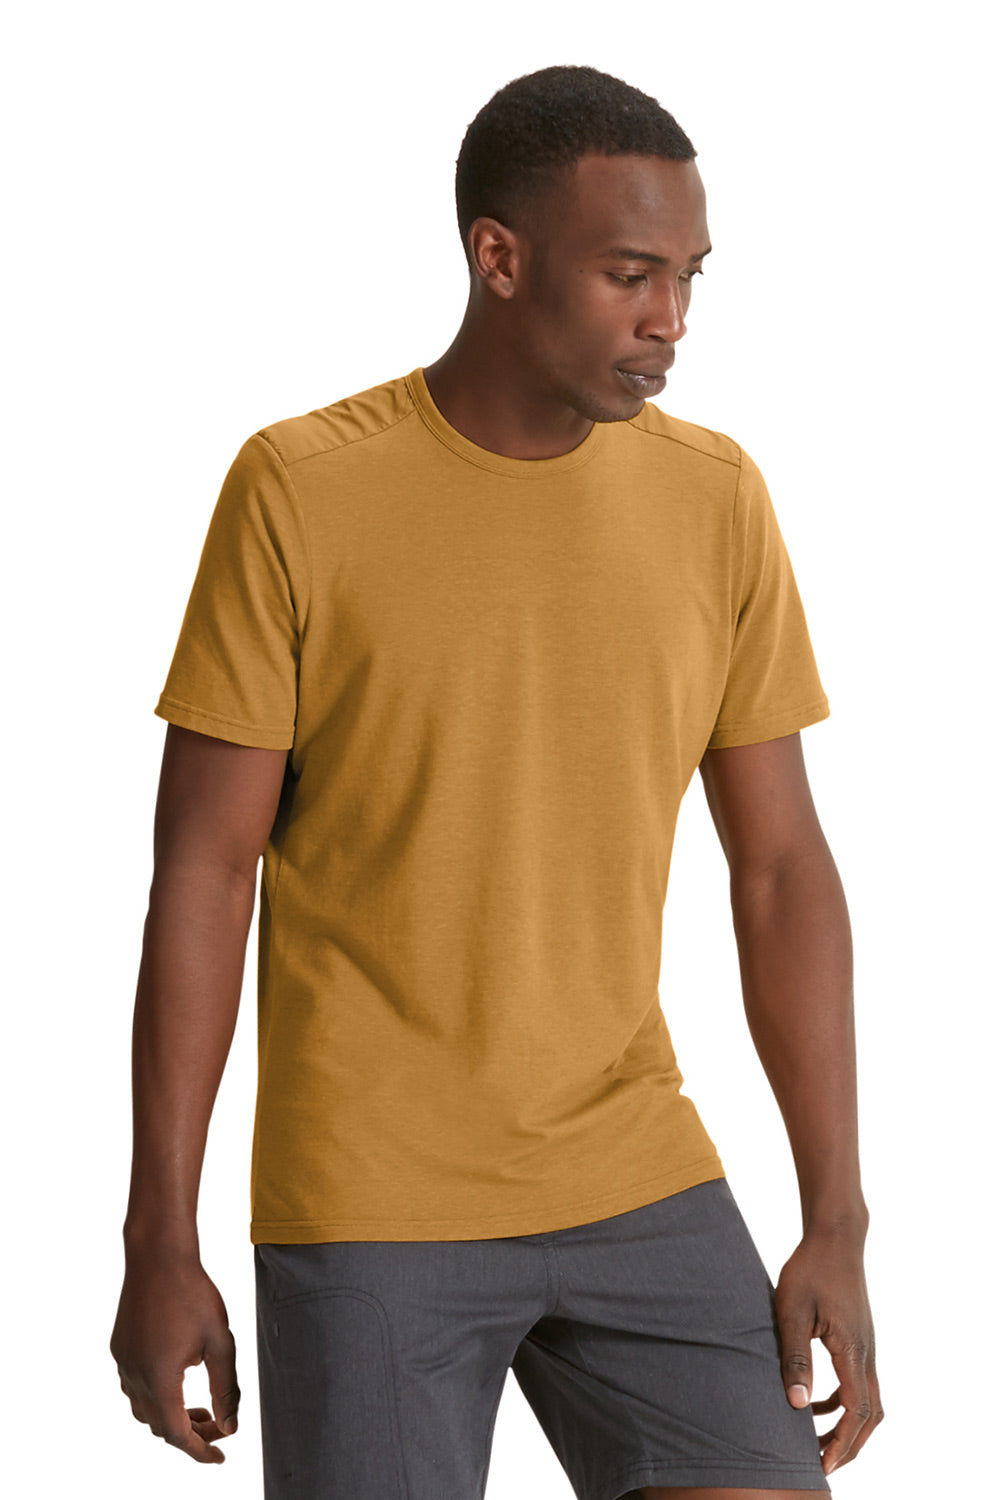 Wander Short Sleeve T-Shirt - Curry